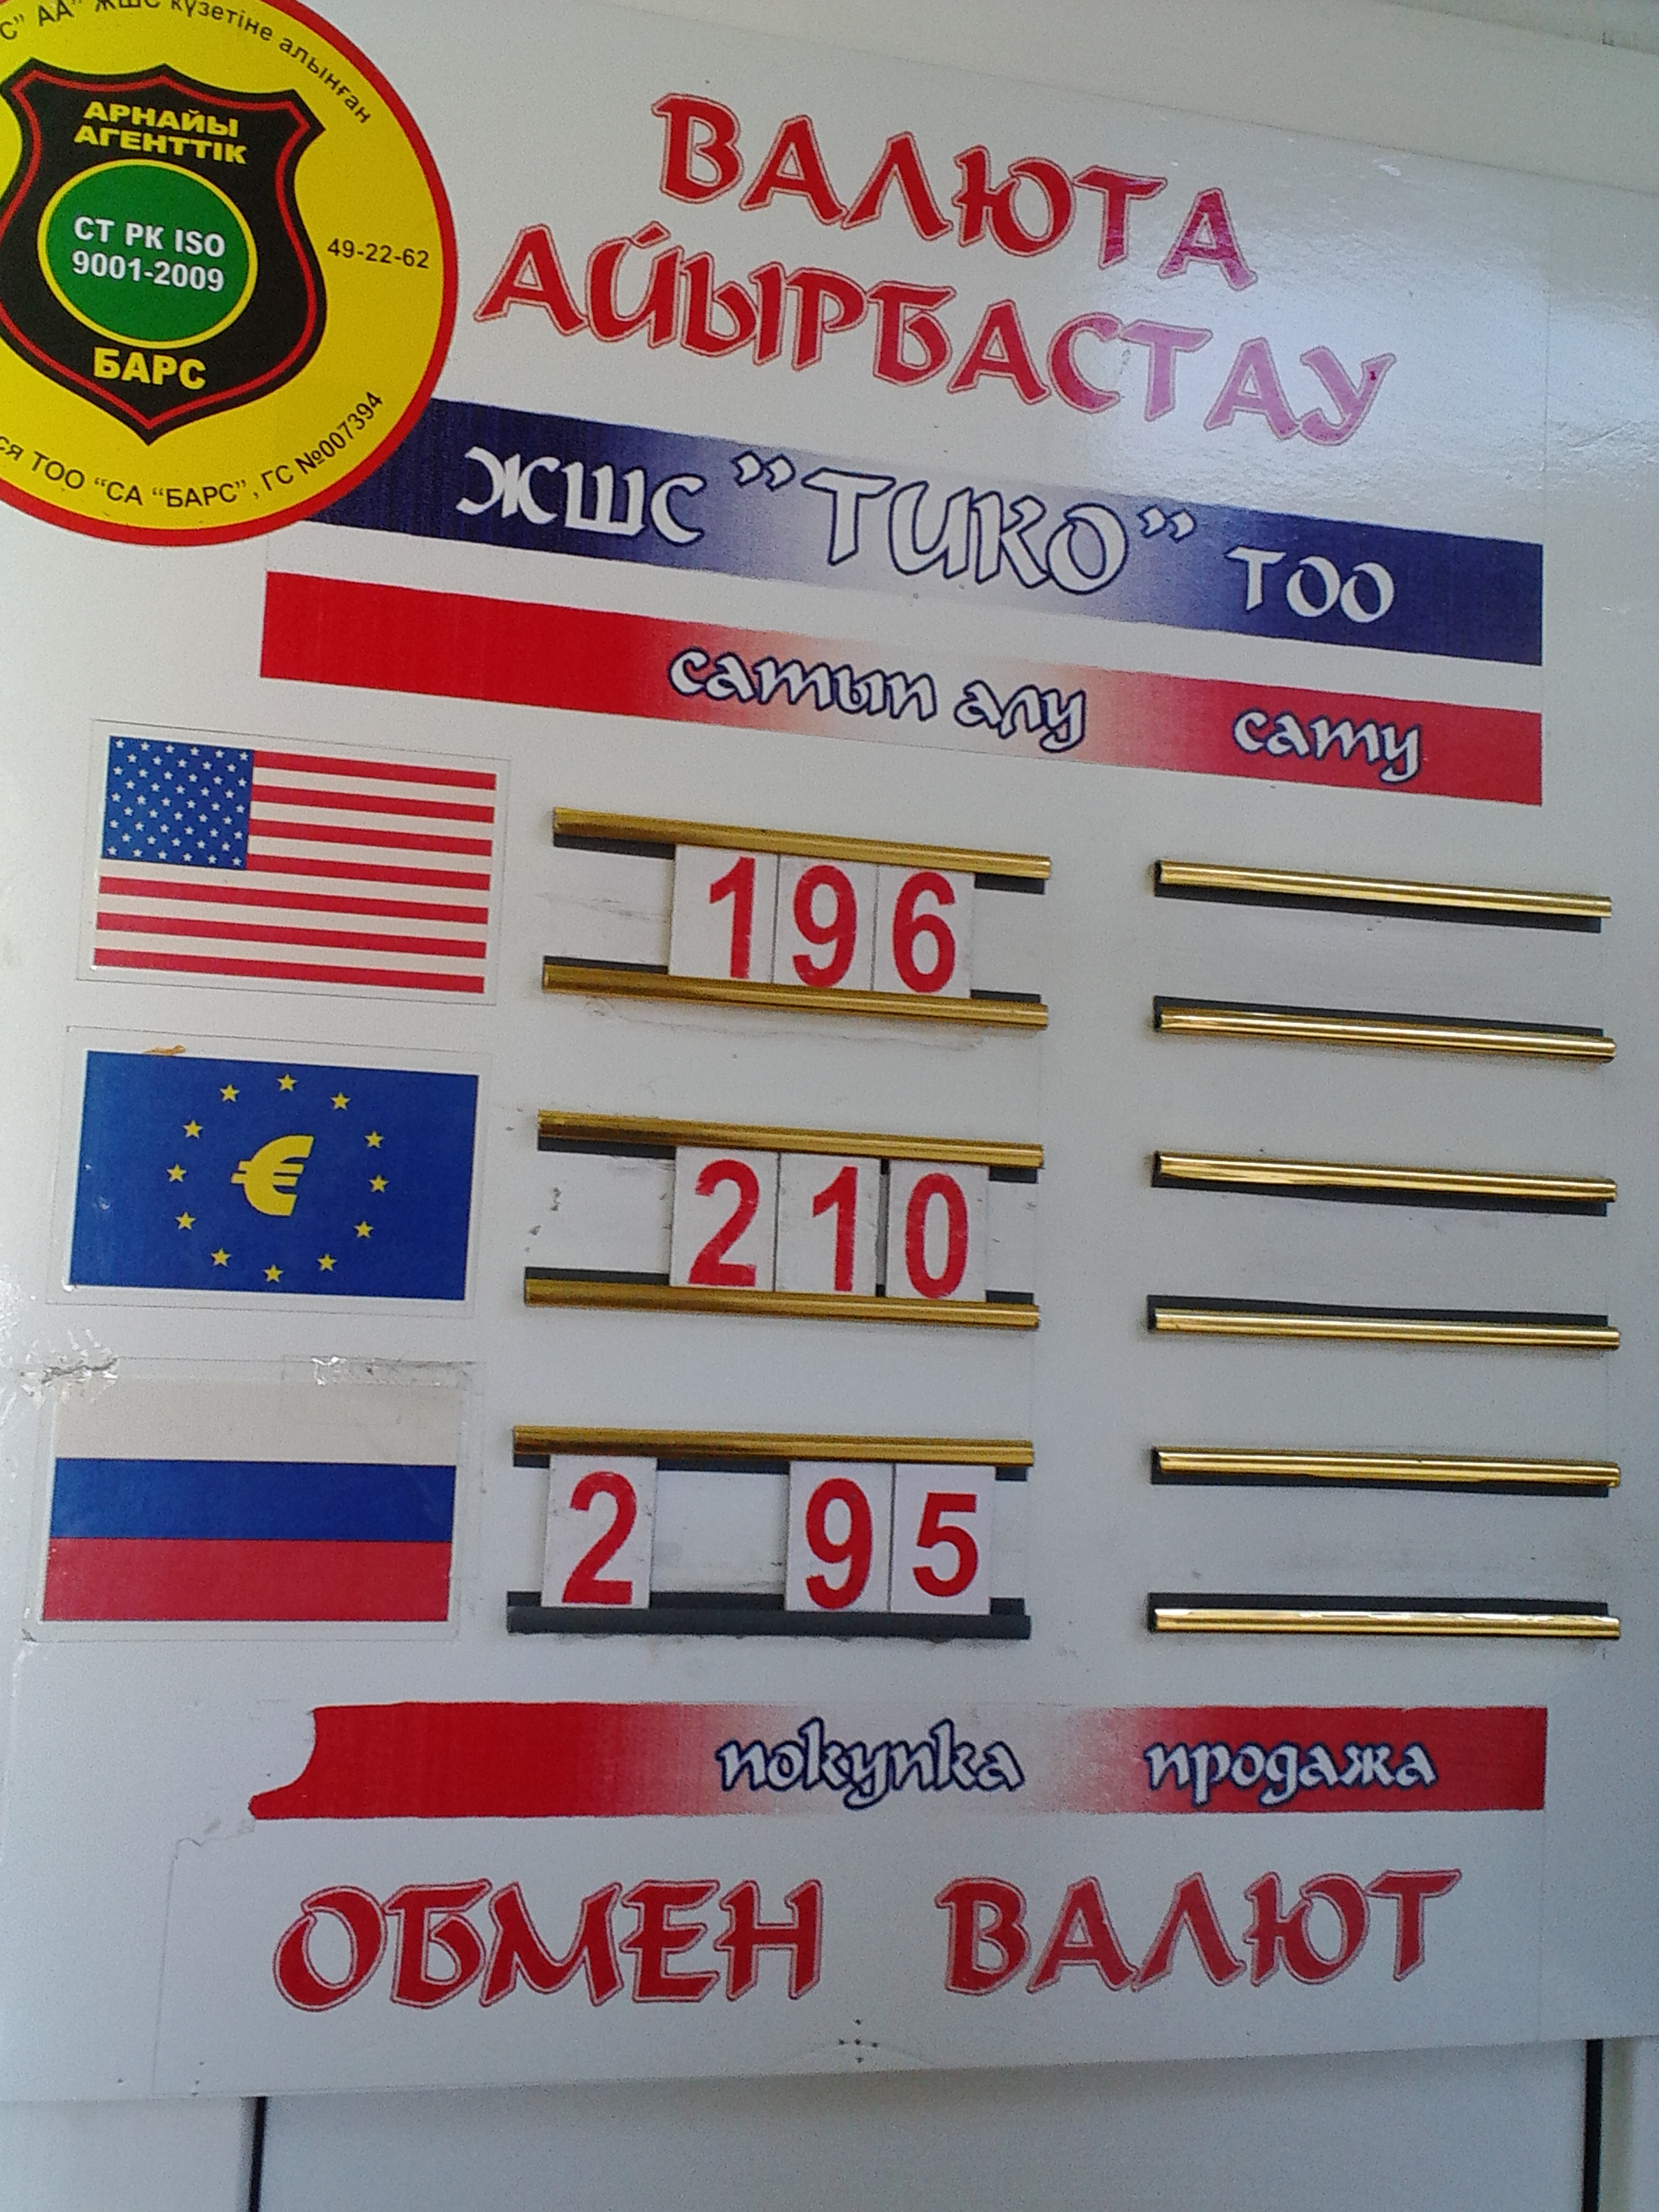 Обмен валют в казахстане петропавловск курс обмена валют в юникредит банке